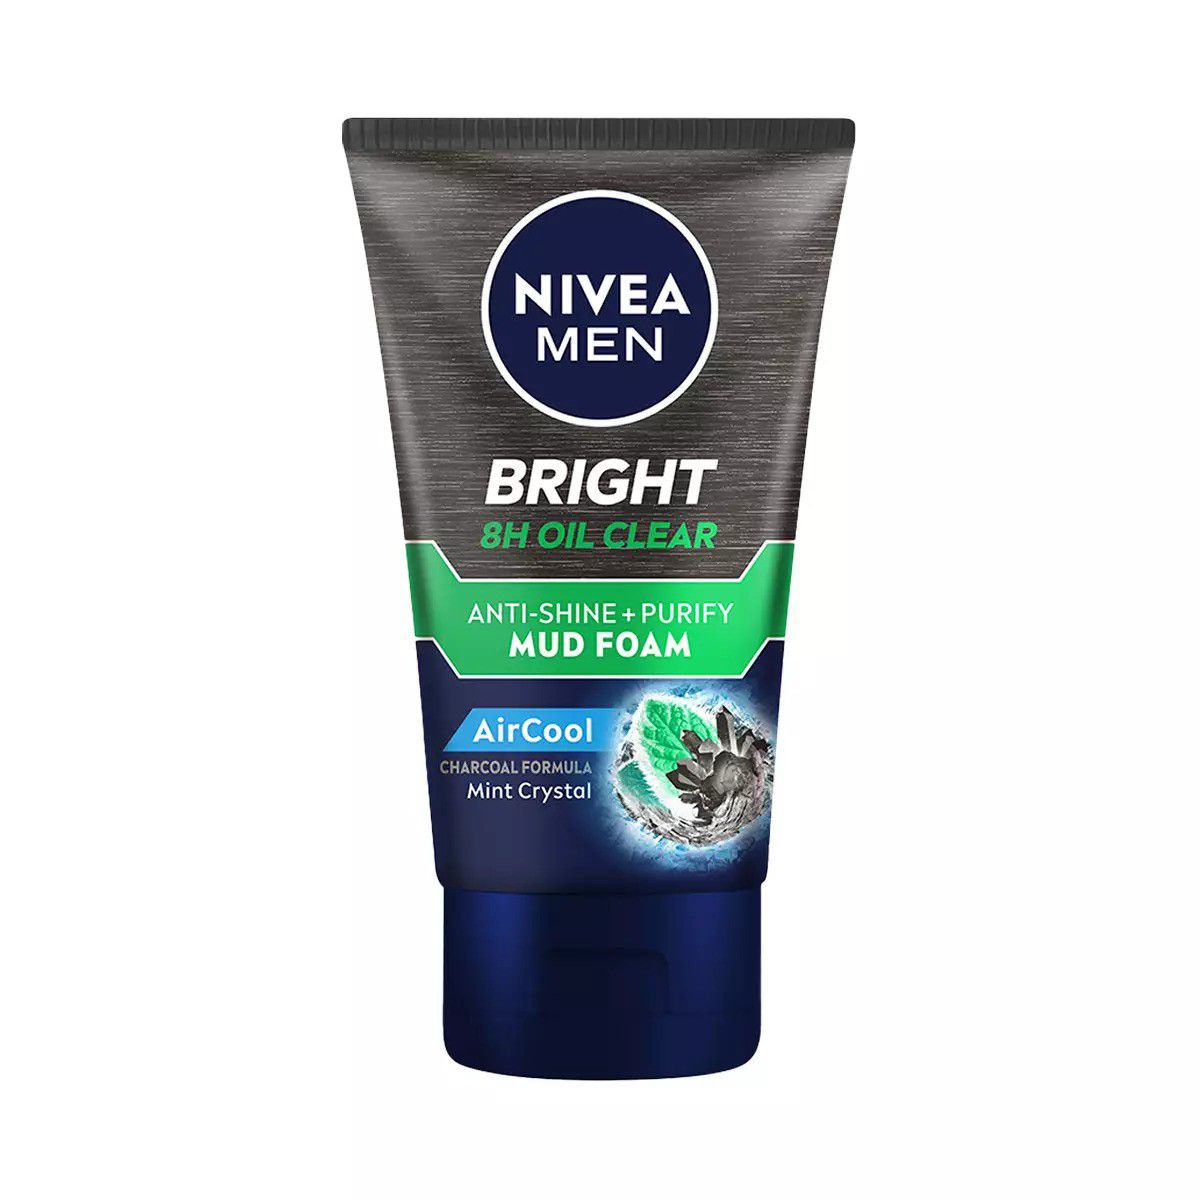 Rekomendasi Face Wash Pria Untuk Kulit Berminyak - Nivea Men White 8H Oil Clear Anti Shine Cooling F